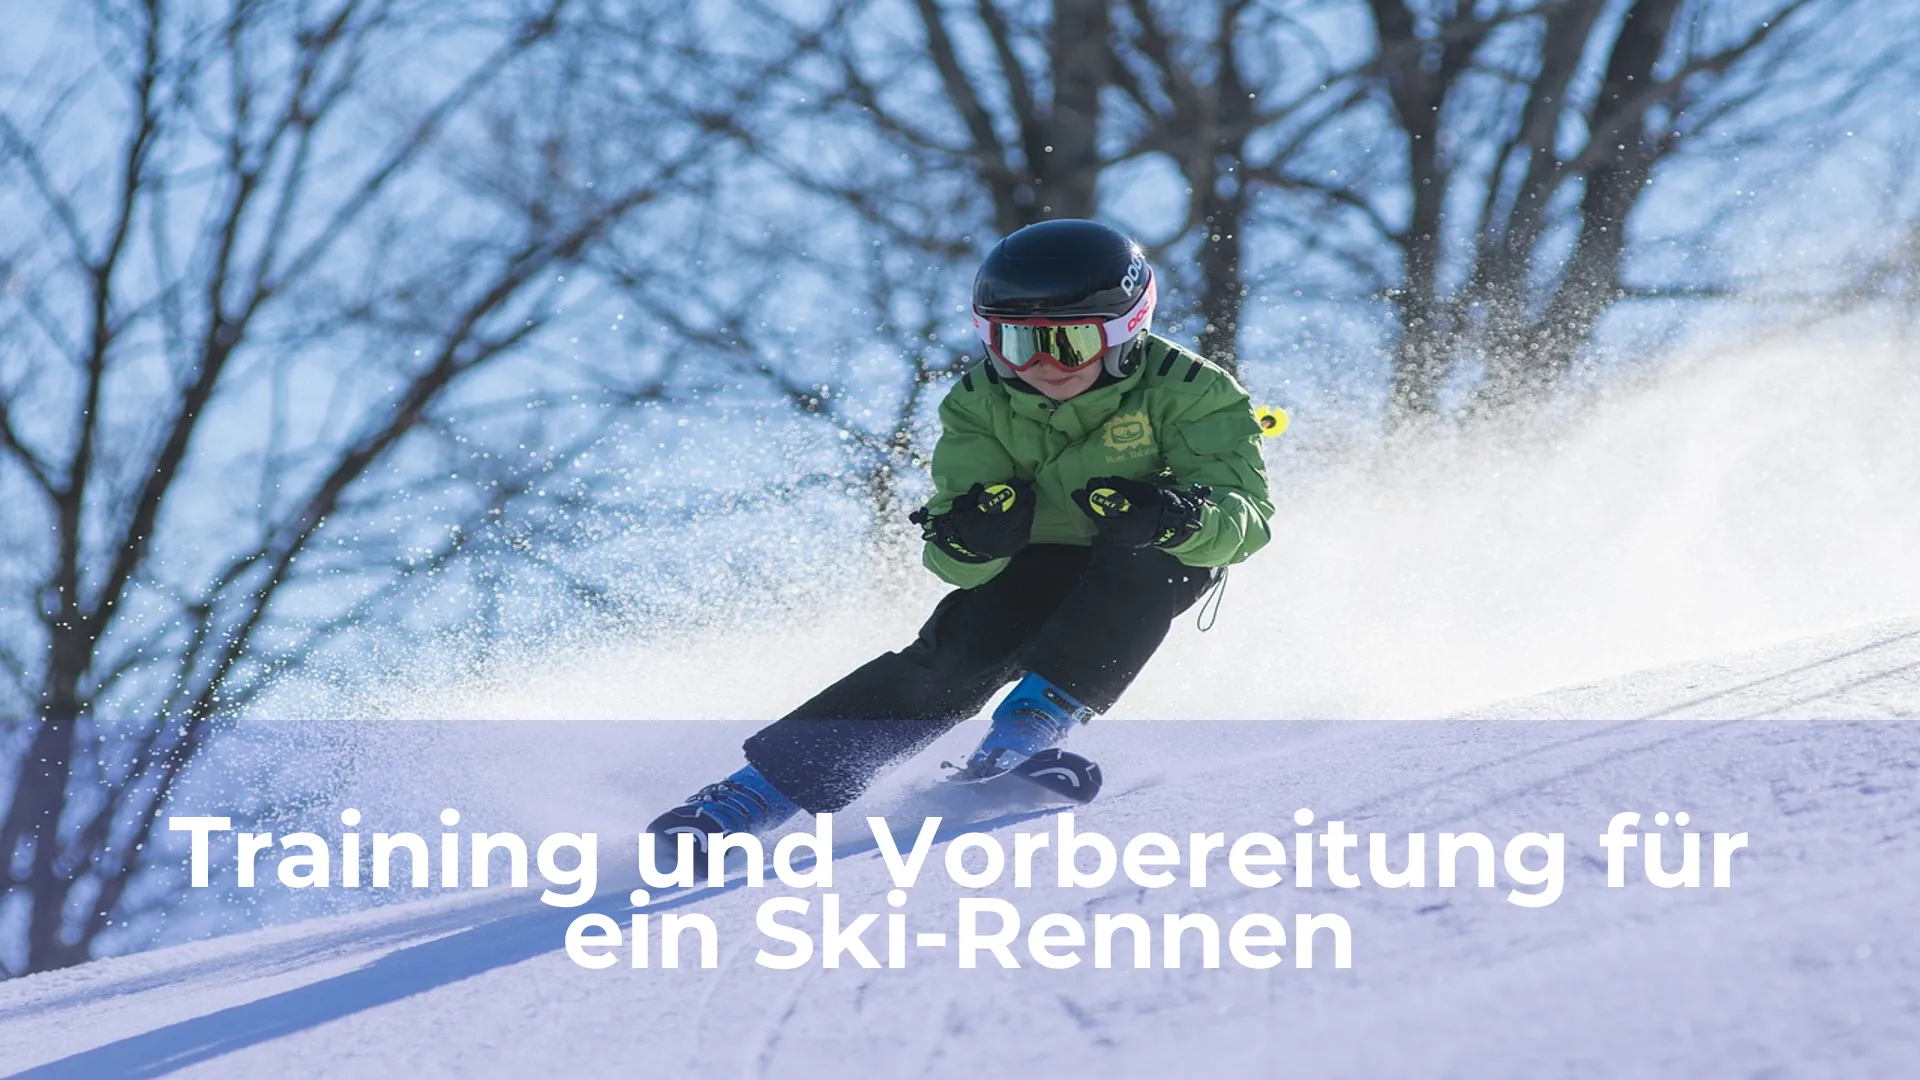 Training und vorbereitung für ein ski rennen